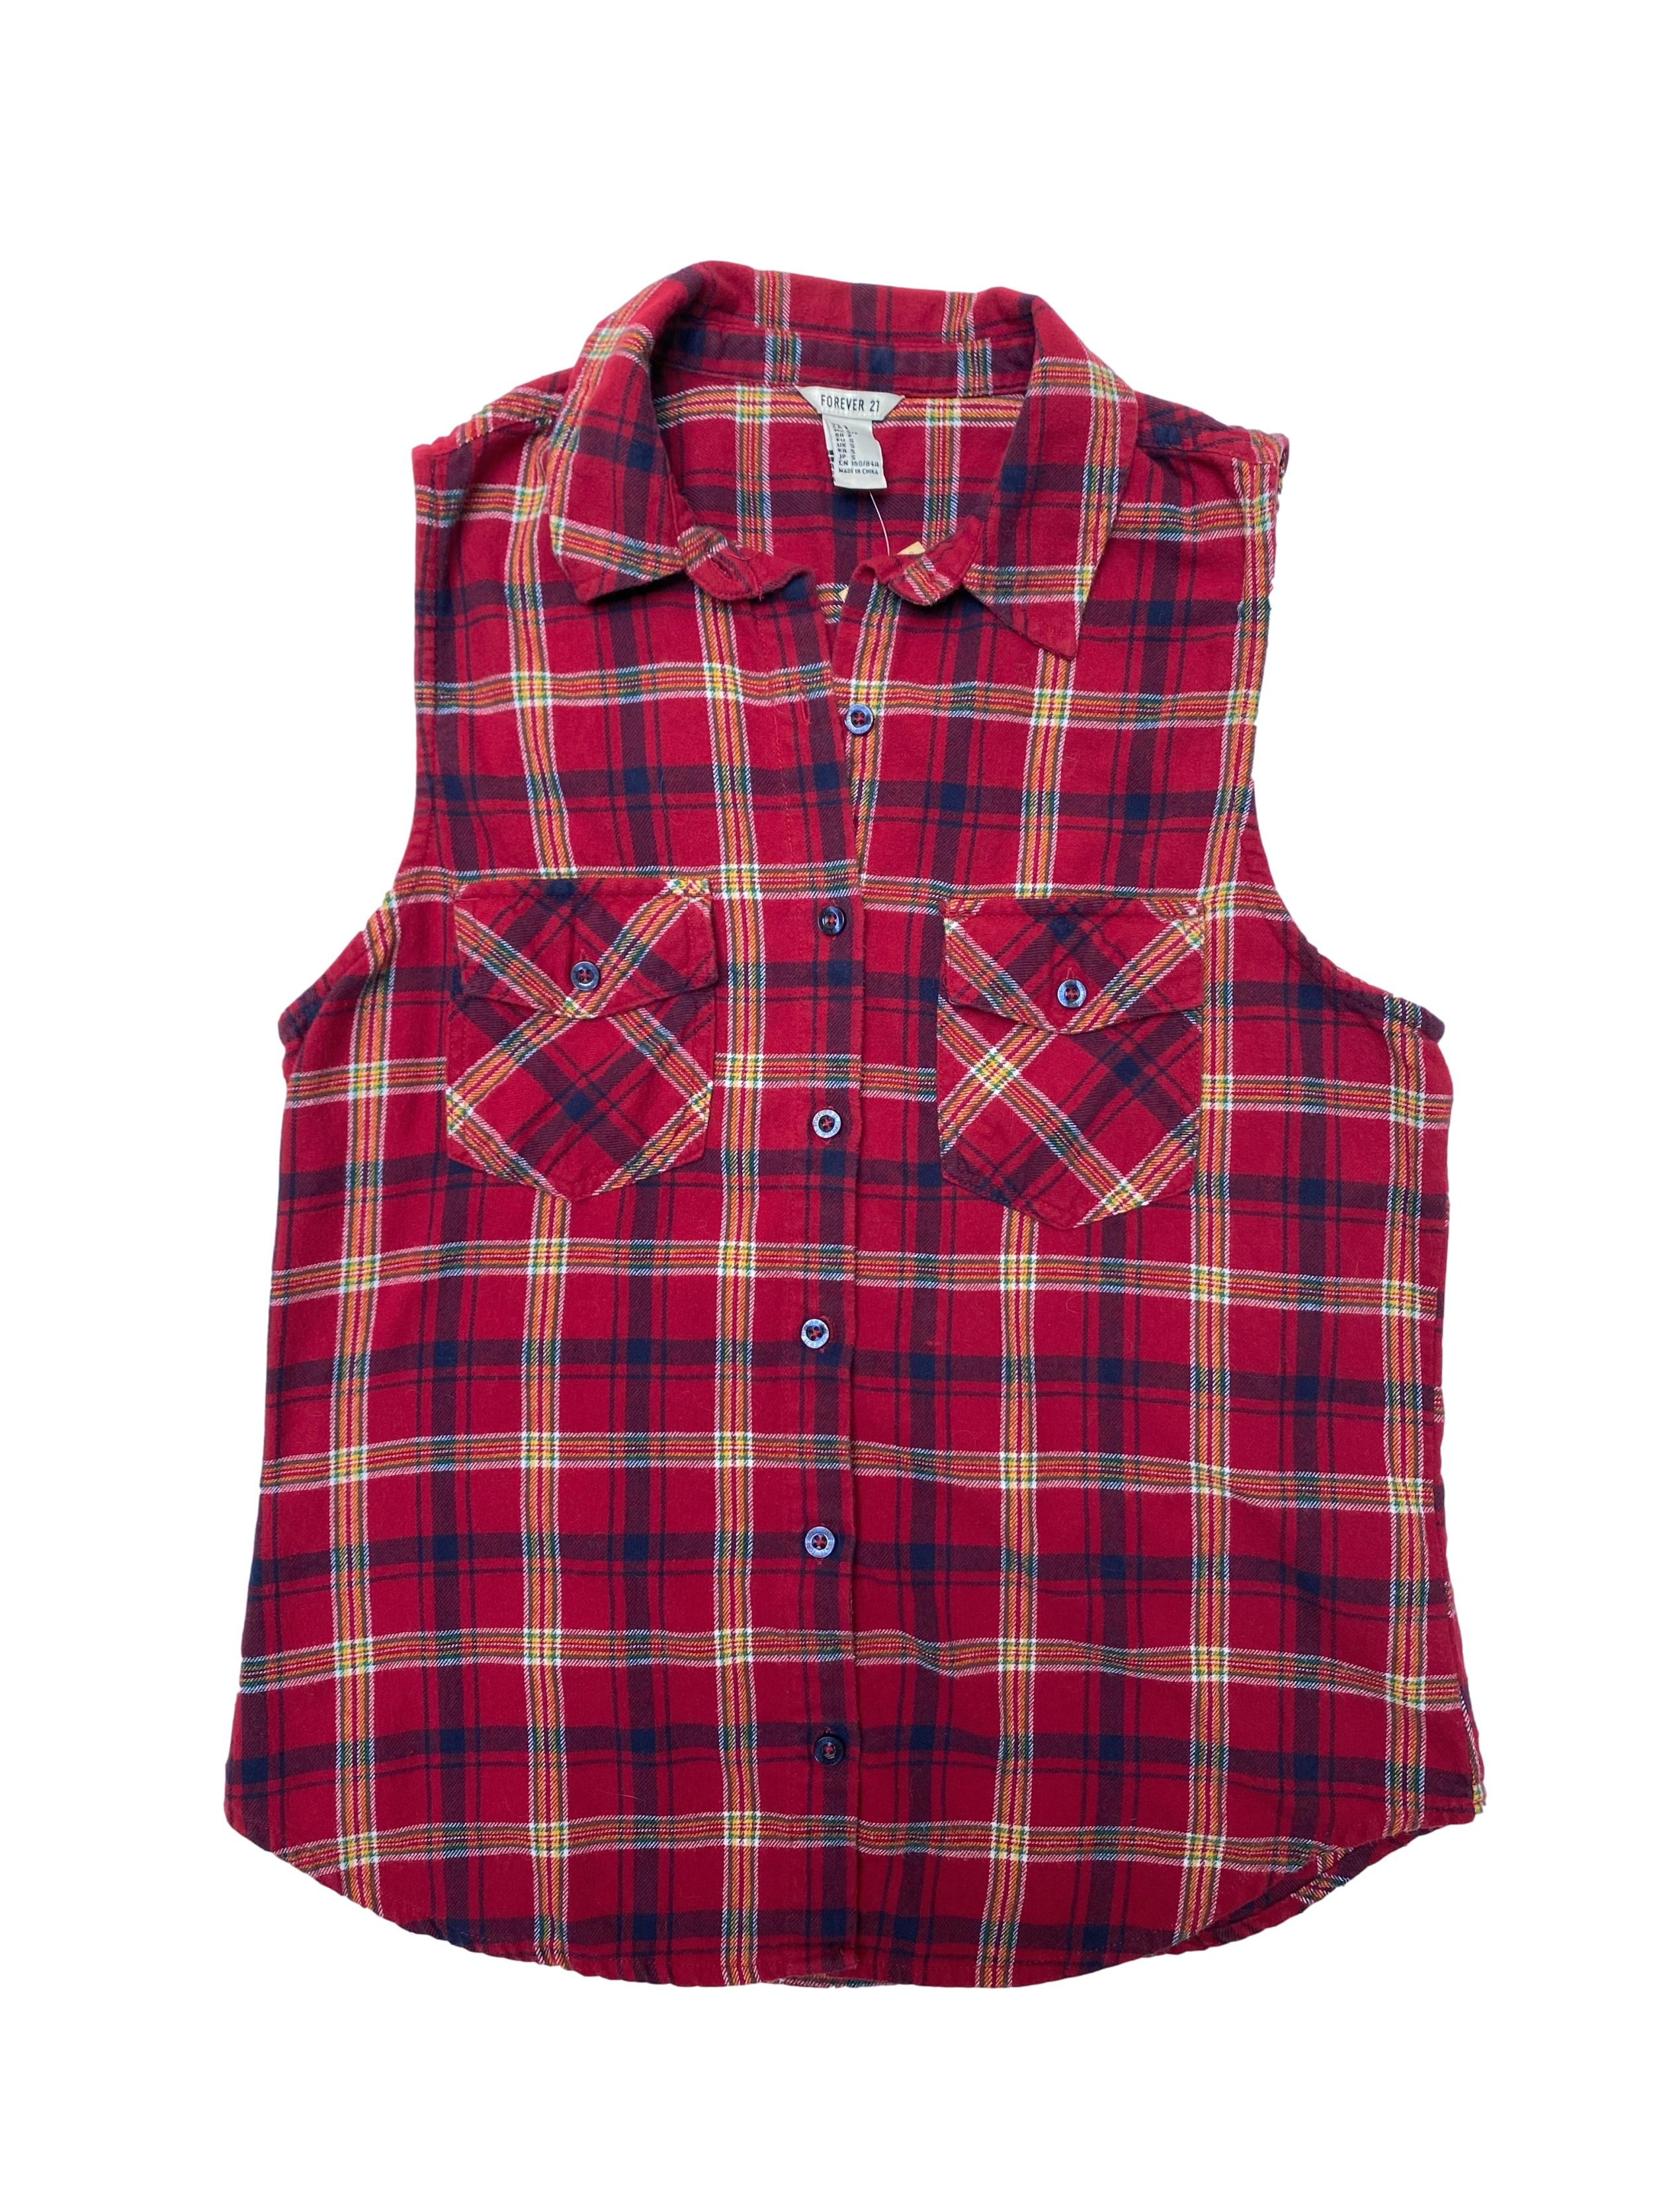 Blusa Forever21 de franela 100% algodón roja a cuadros con botones y bolsillos delanteros